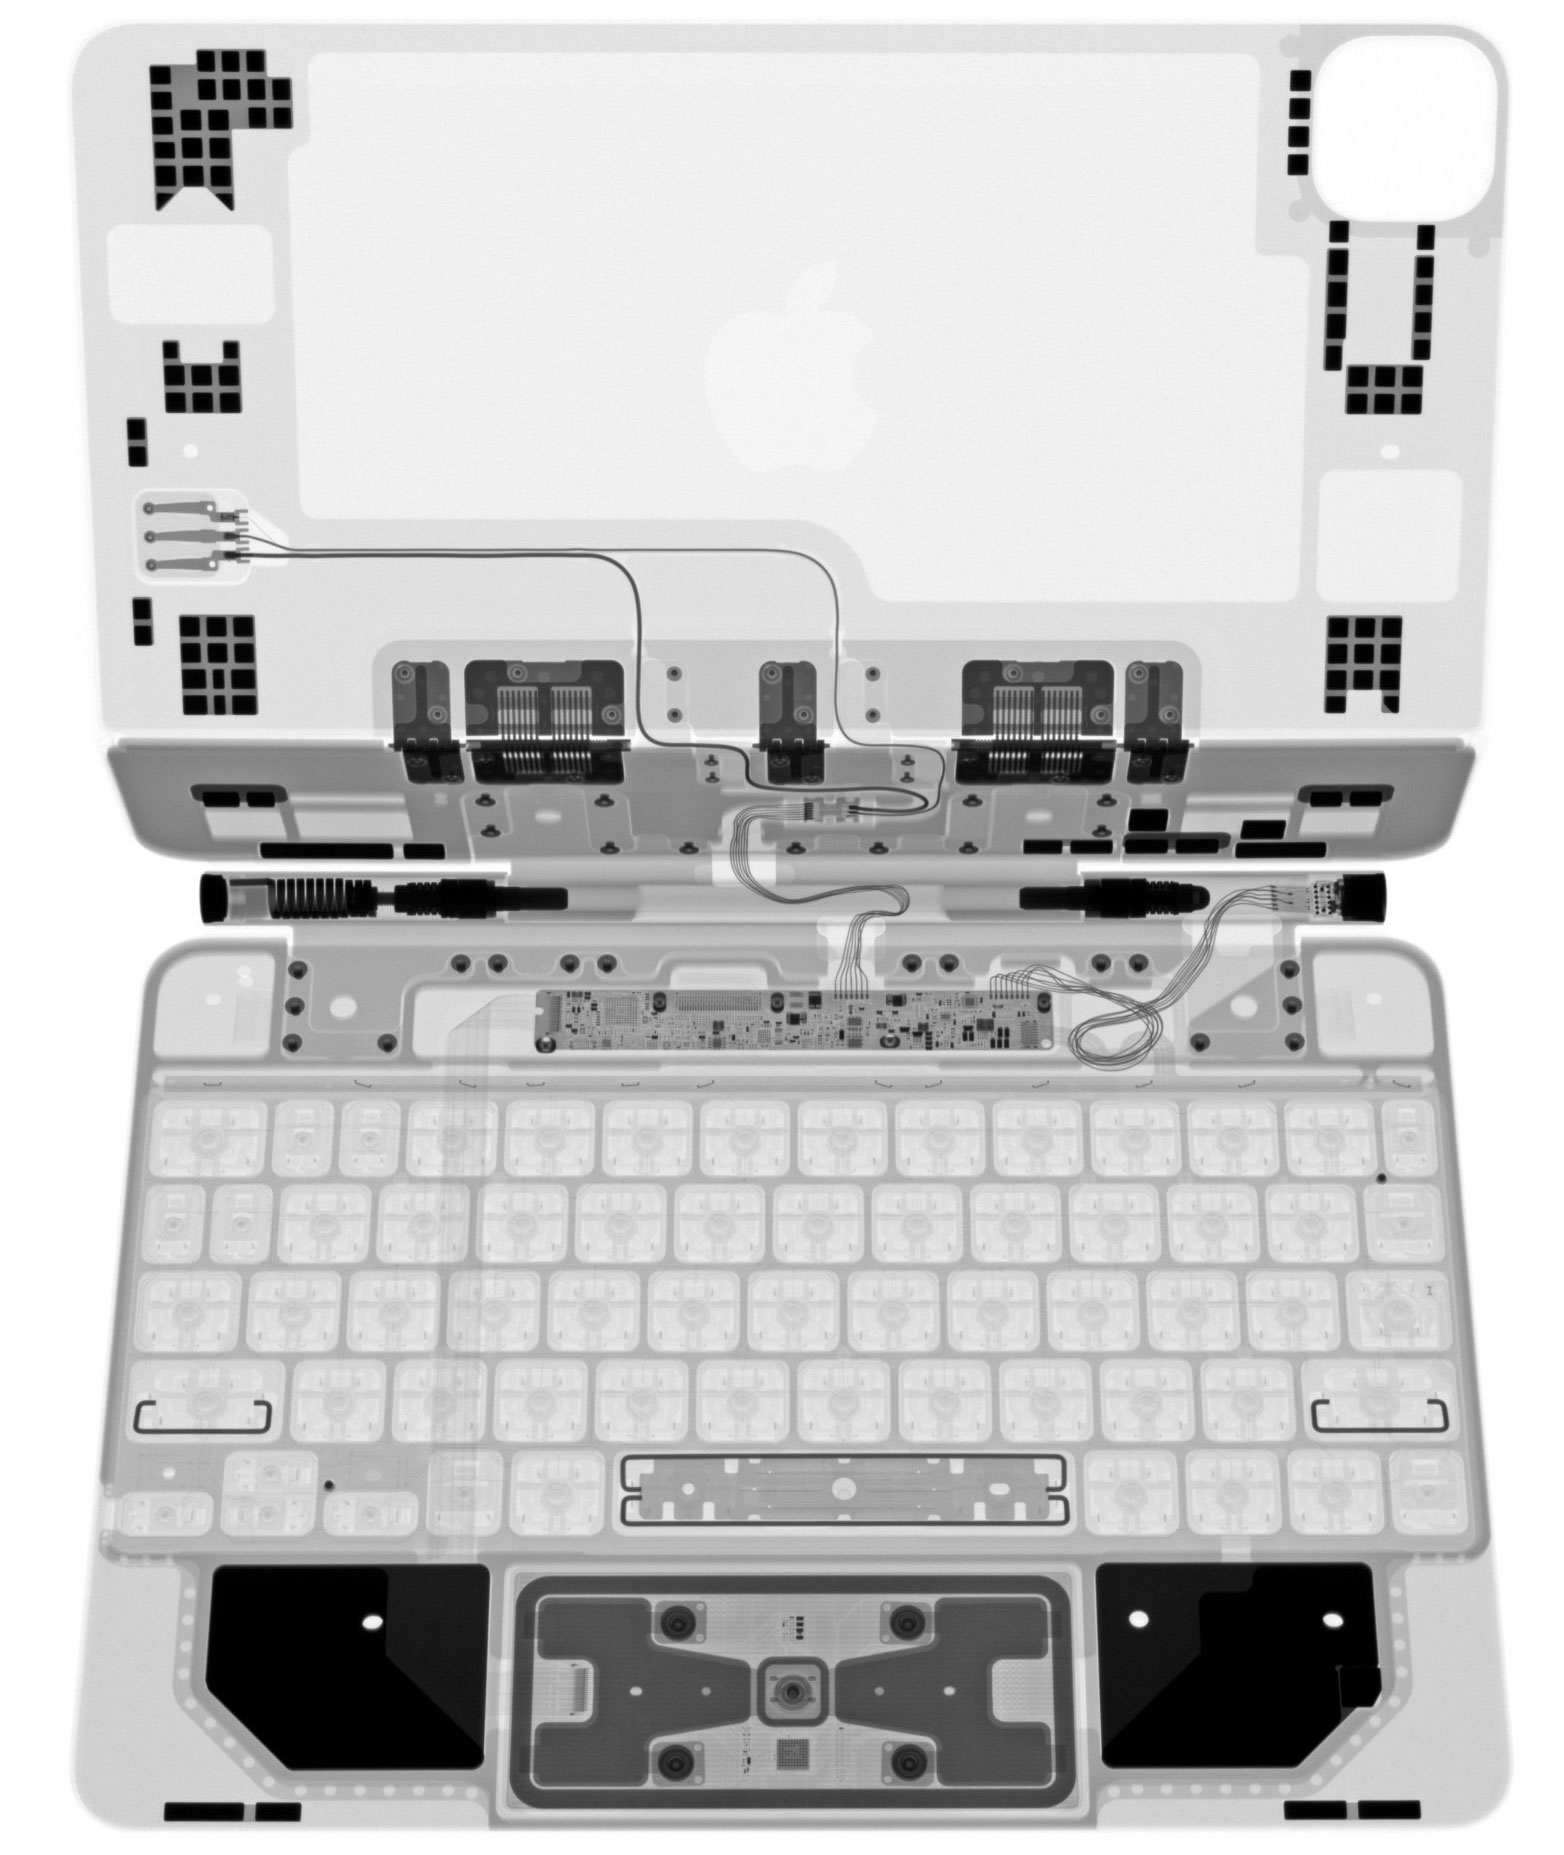 Magic Keyboard iPad Pro visto a rayos X